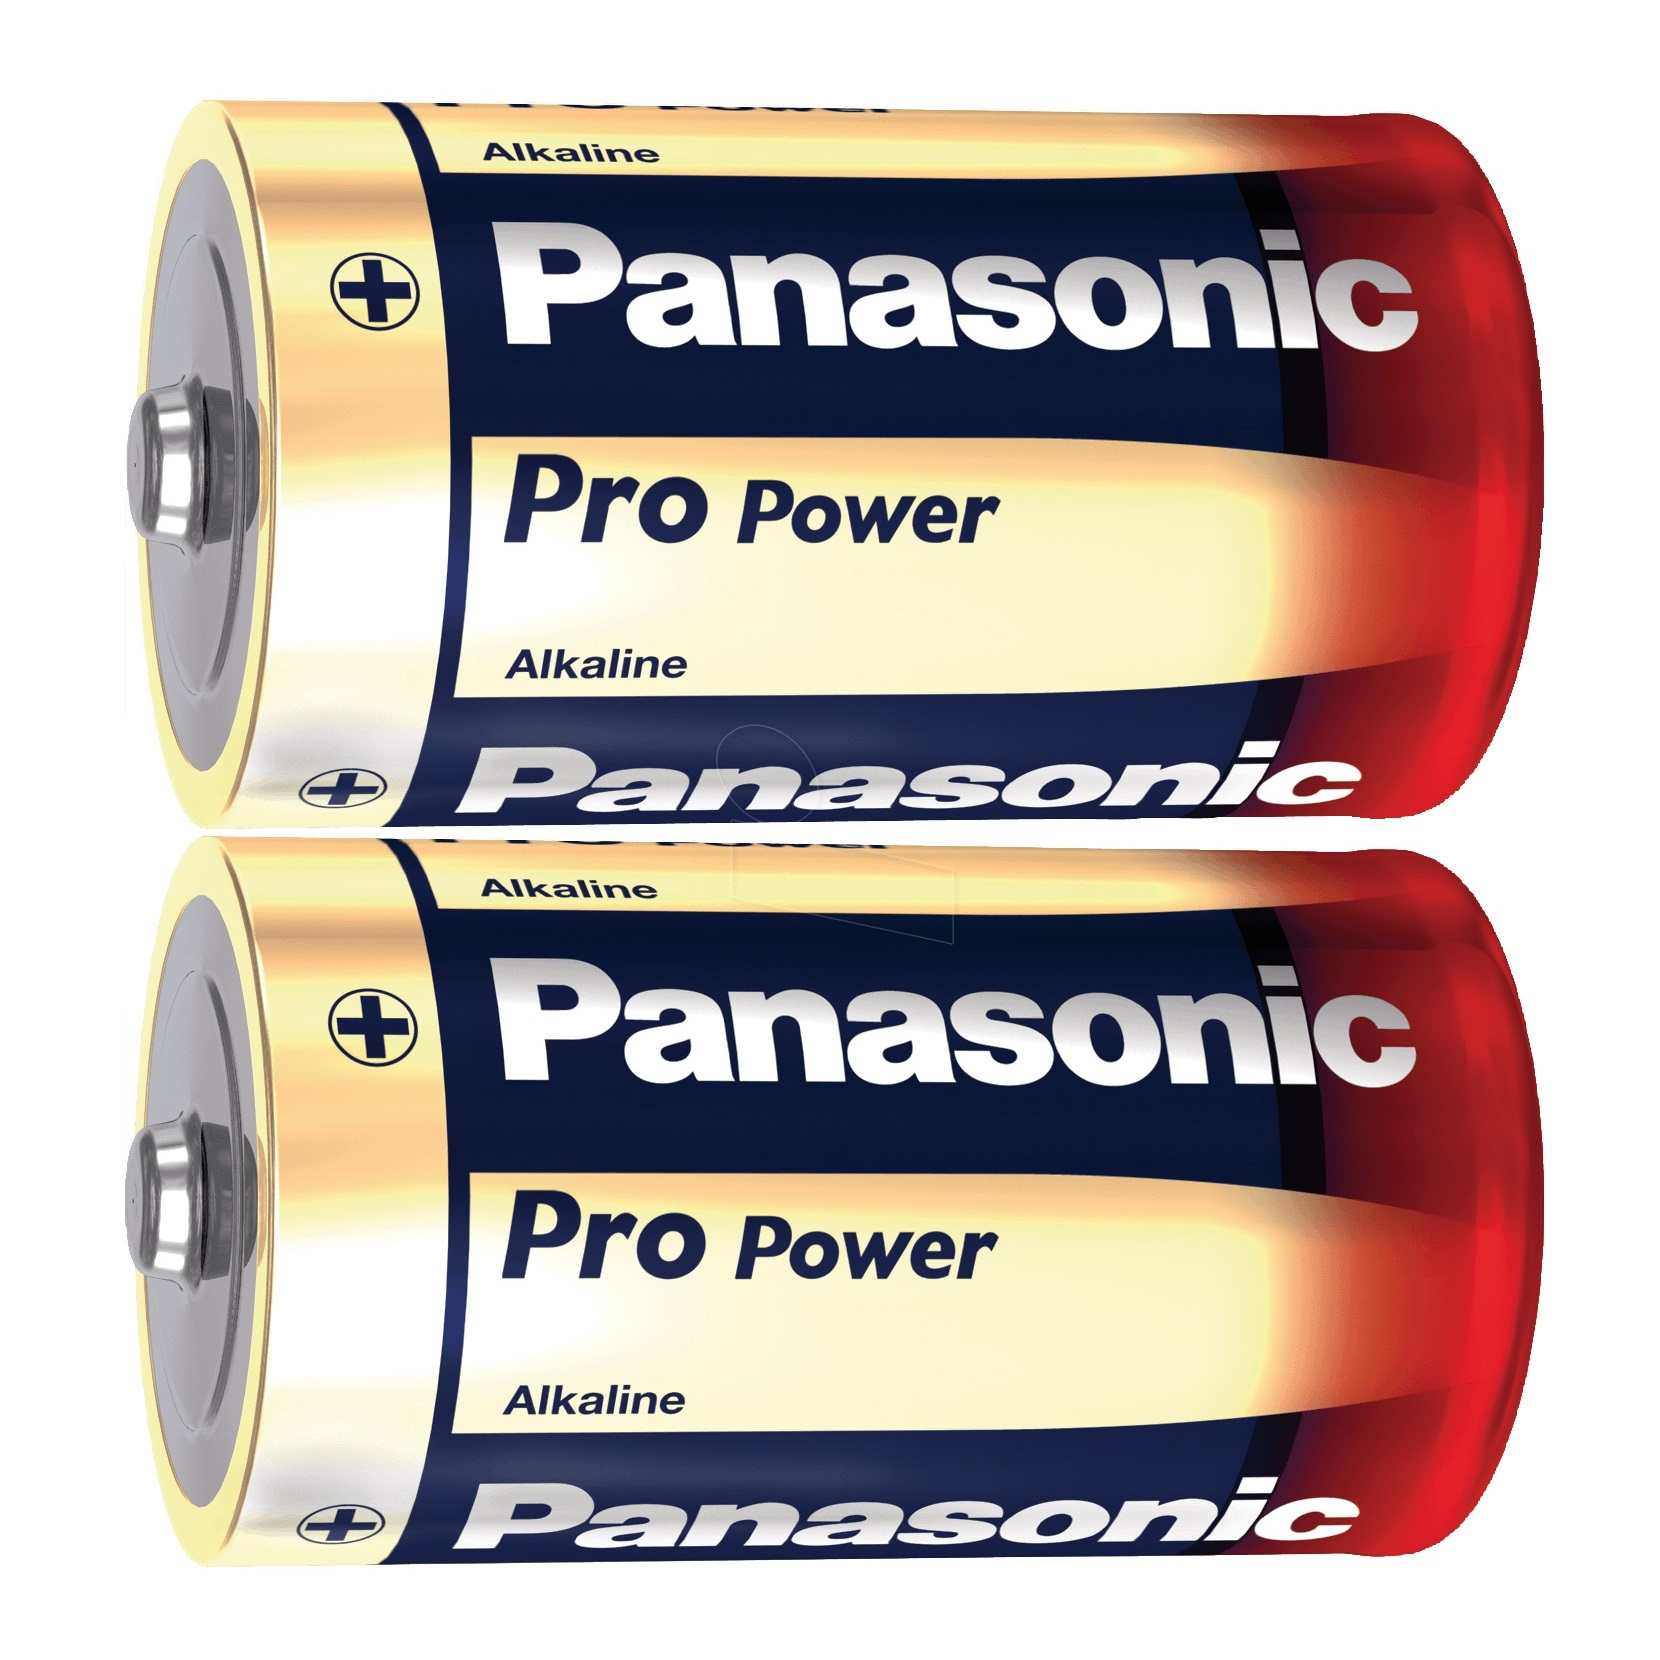 PANASONIC - 2 Piles LR20 D Pro Power - Lot de 2 piles LR20 D Panasonic Pro  Power Pile conçue pour des  - Livraison gratuite dès 120€